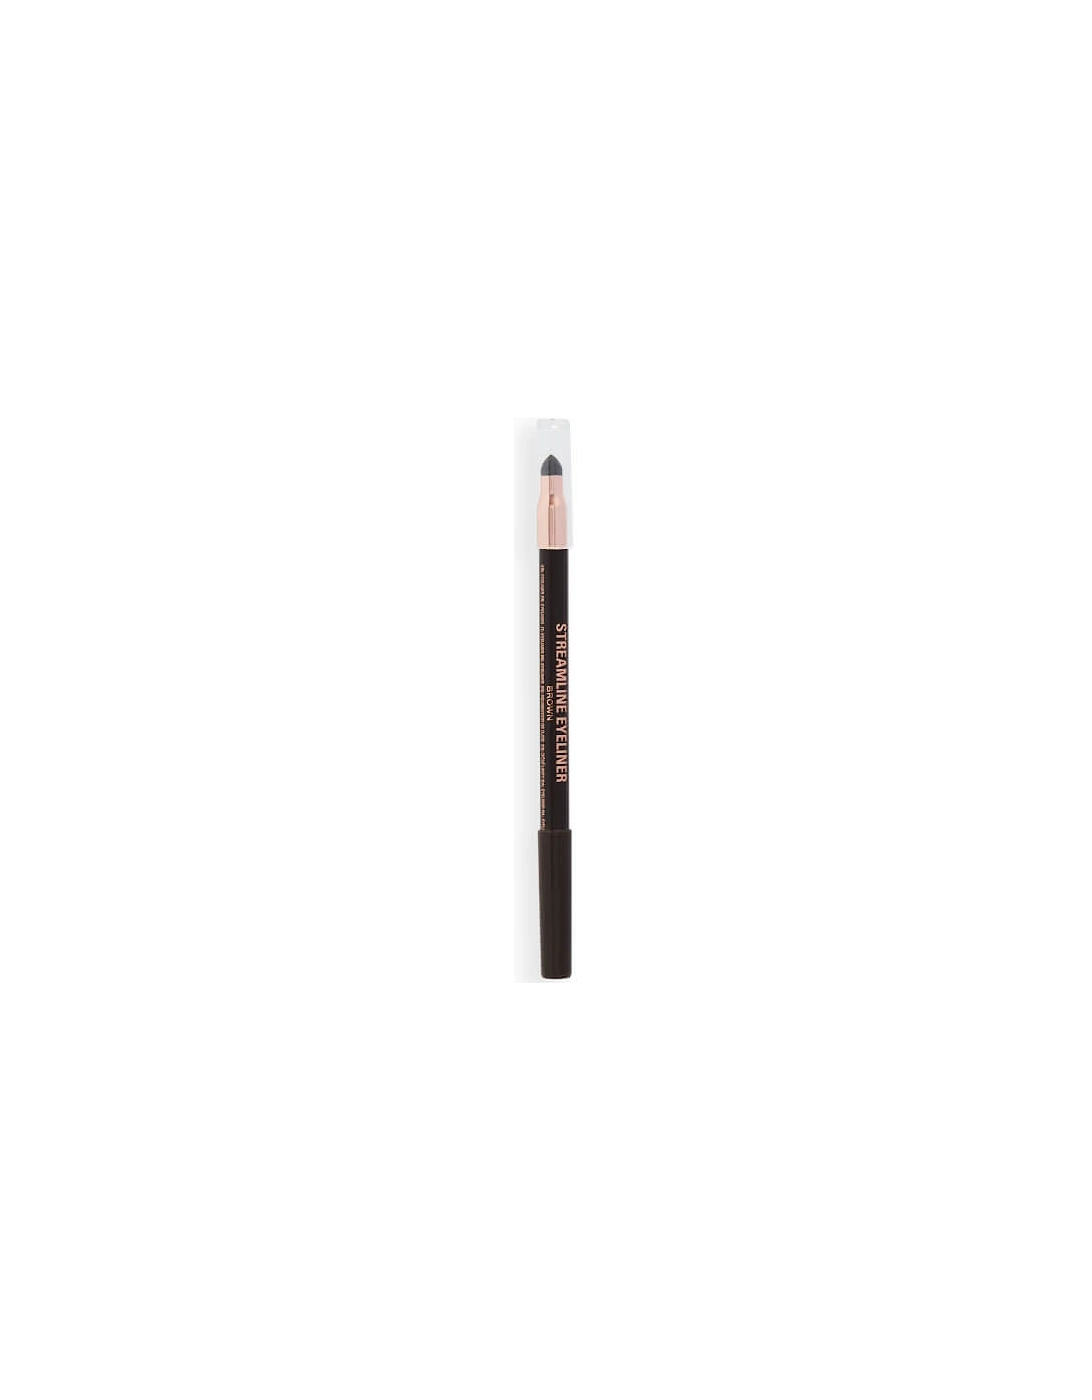 Makeup Streamline Waterline Eyeliner Pencil - Brown, 2 of 1